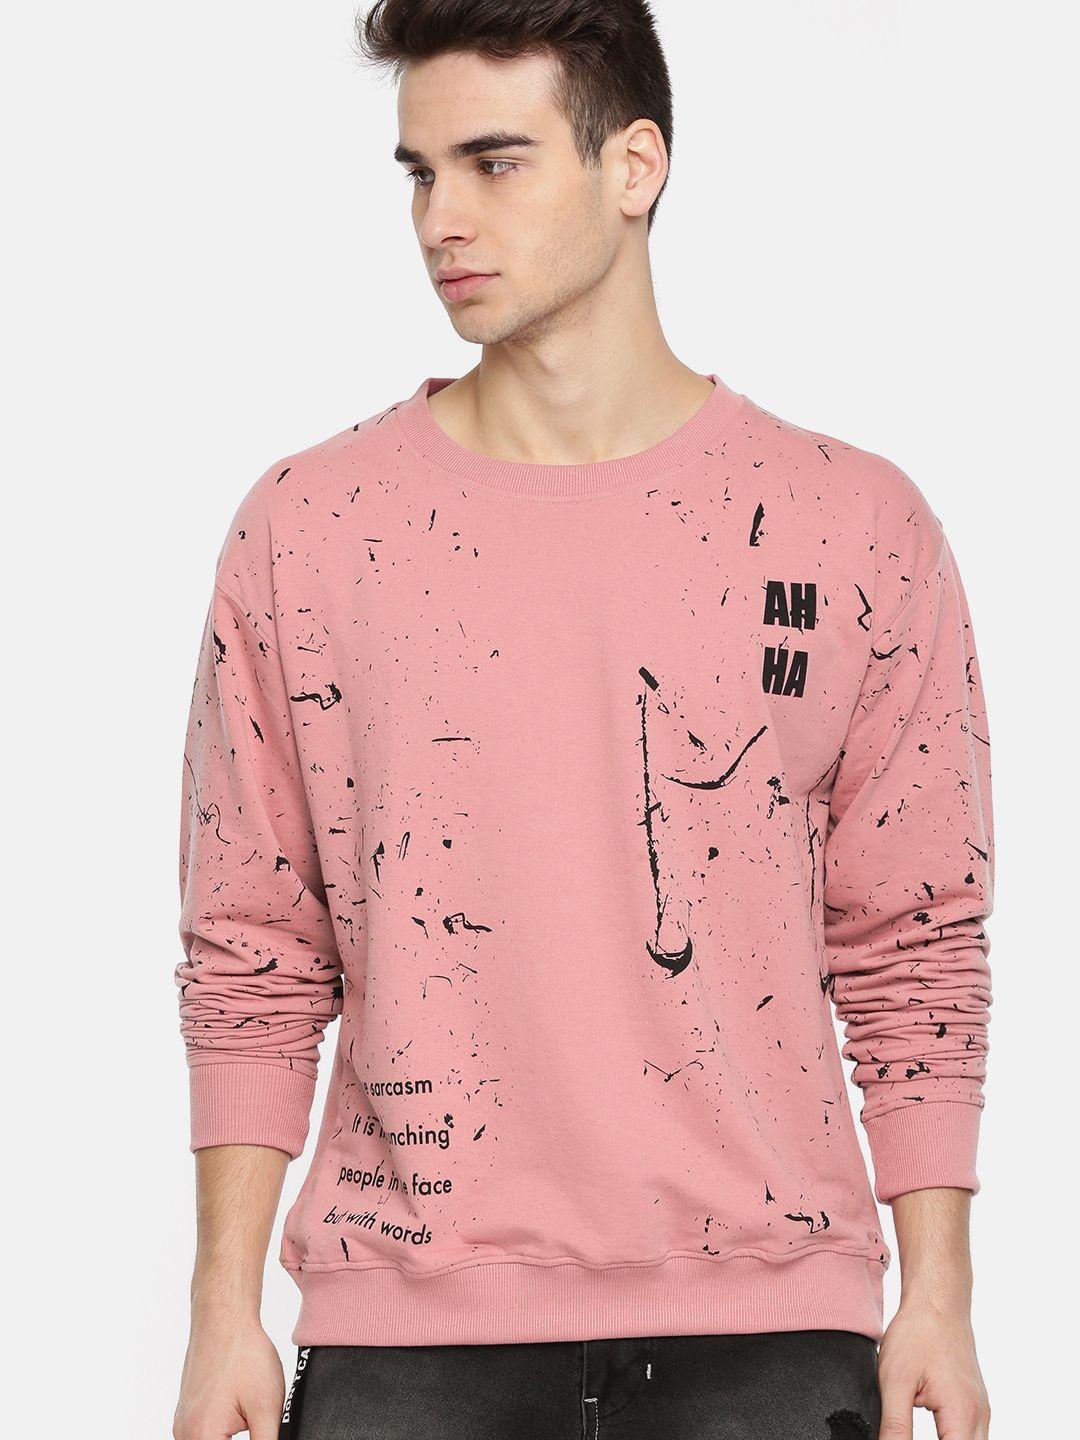 kook n keech men pink & black printed sweatshirt